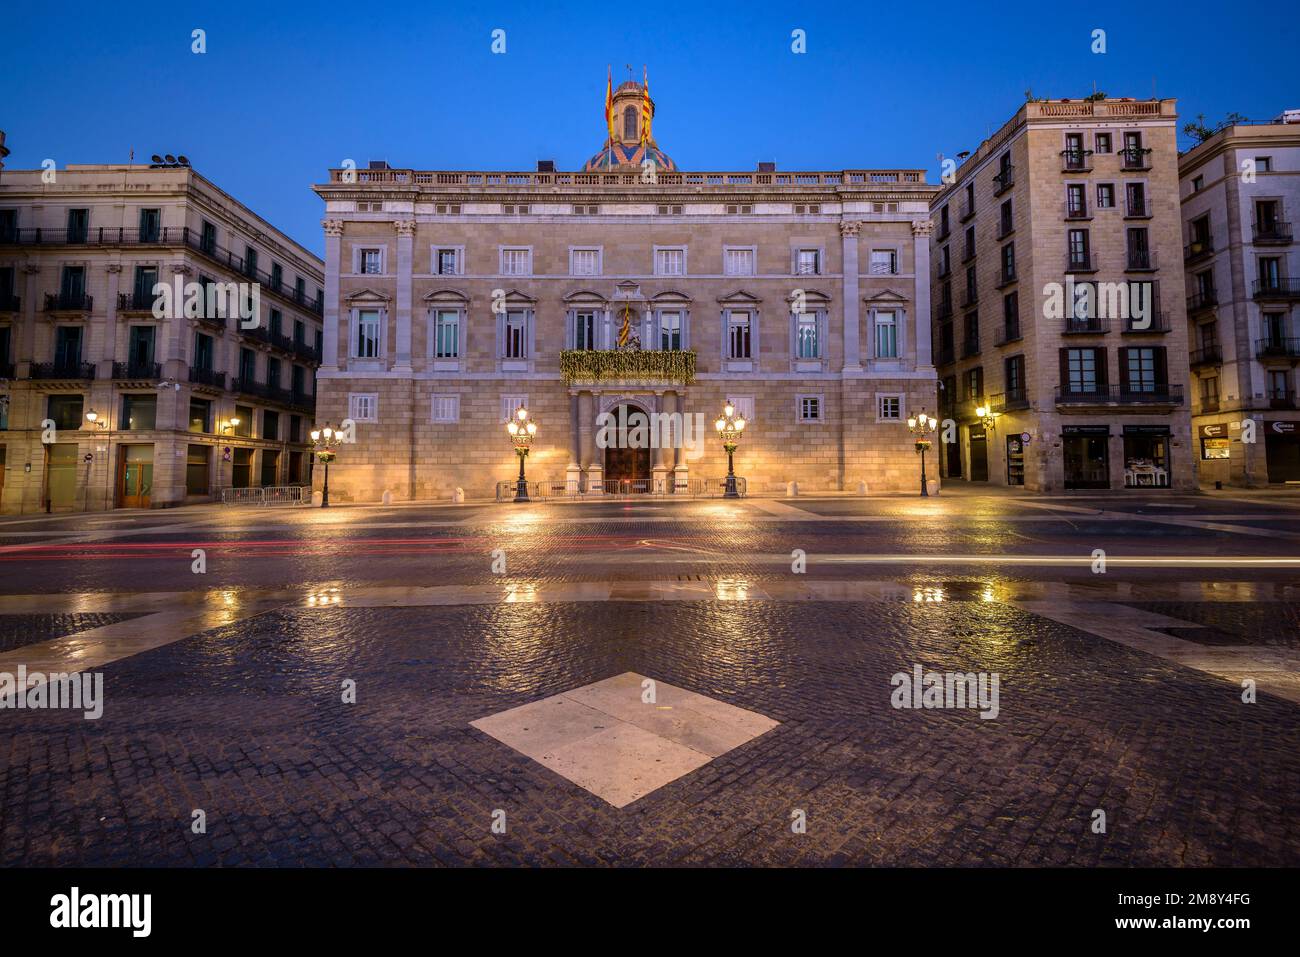 Palazzo della Generalitat di Catalogna e Piazza Sant Jaume di notte e ore blu (Barcellona, Catalogna, Spagna) ESP: Palacio Generalitat de Cataluña Foto Stock